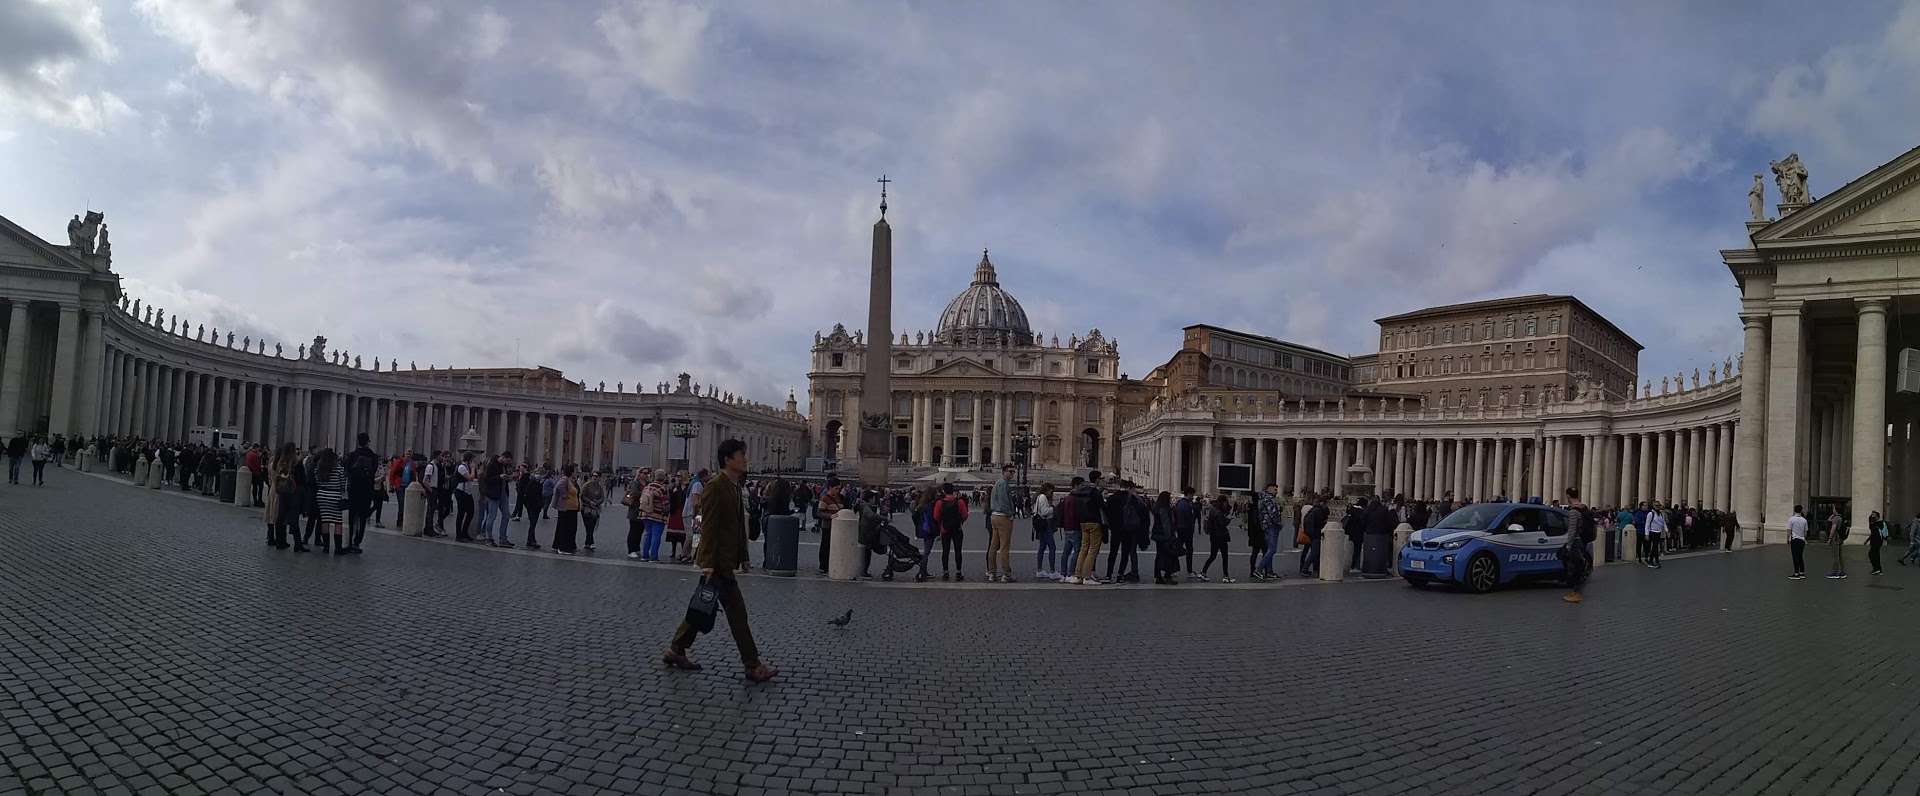 Róma nevezetességei: Vtikán